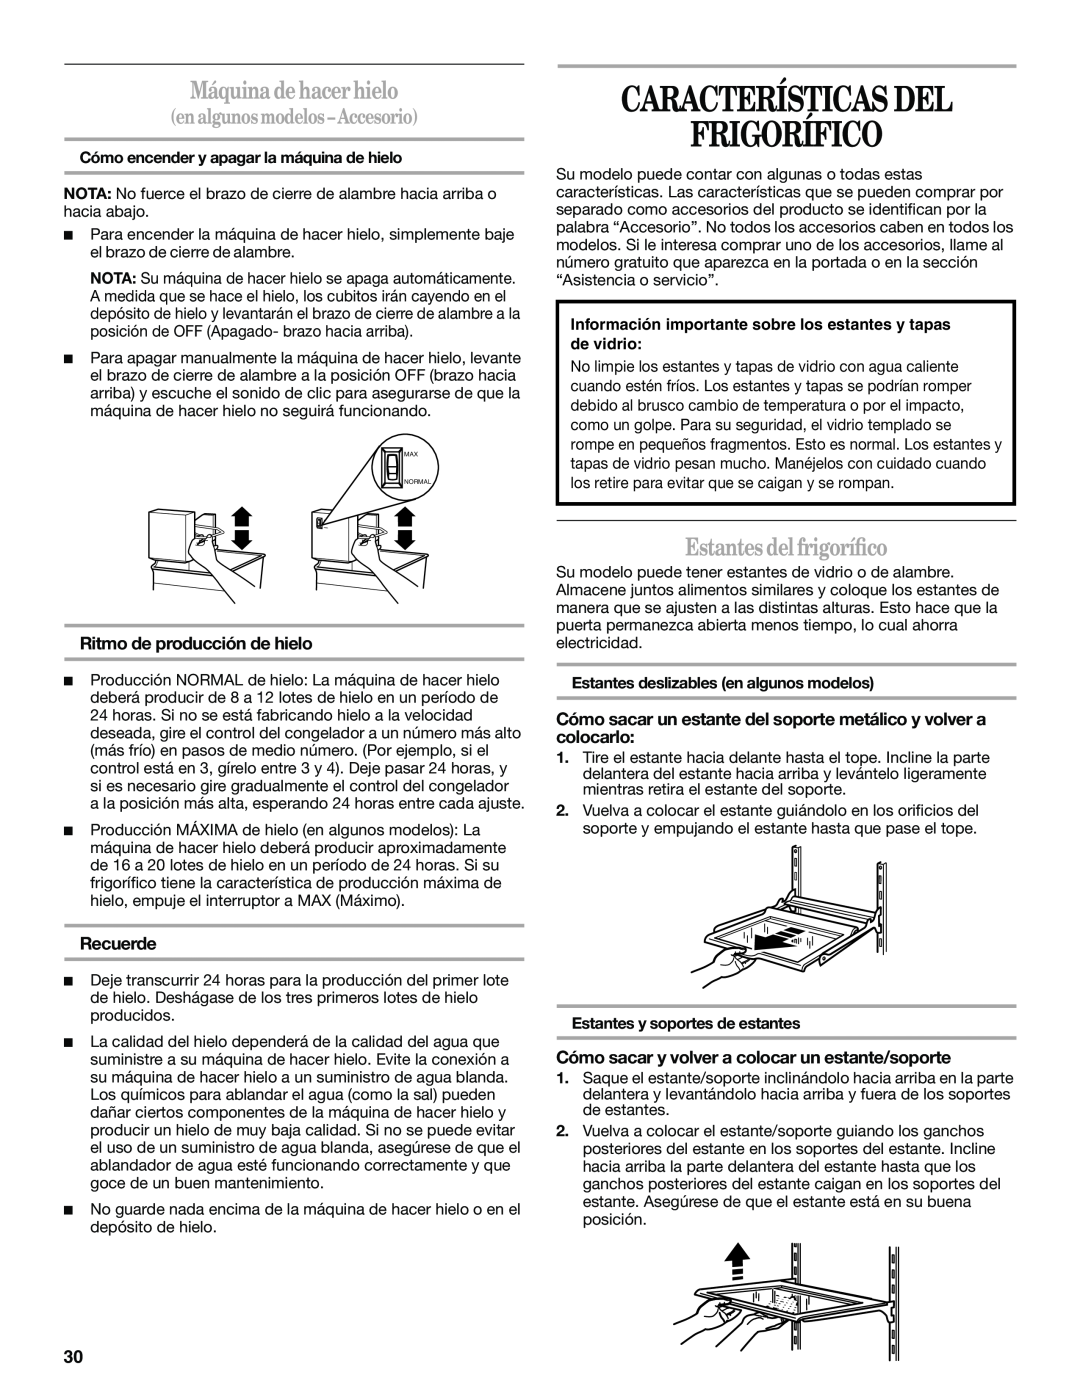 Whirlpool Refrigerator, 338, 2314183 Características Del Frigorífico, Máquinadehacerhielo, Estantesdelfrigoríﬁco, Recuerde 